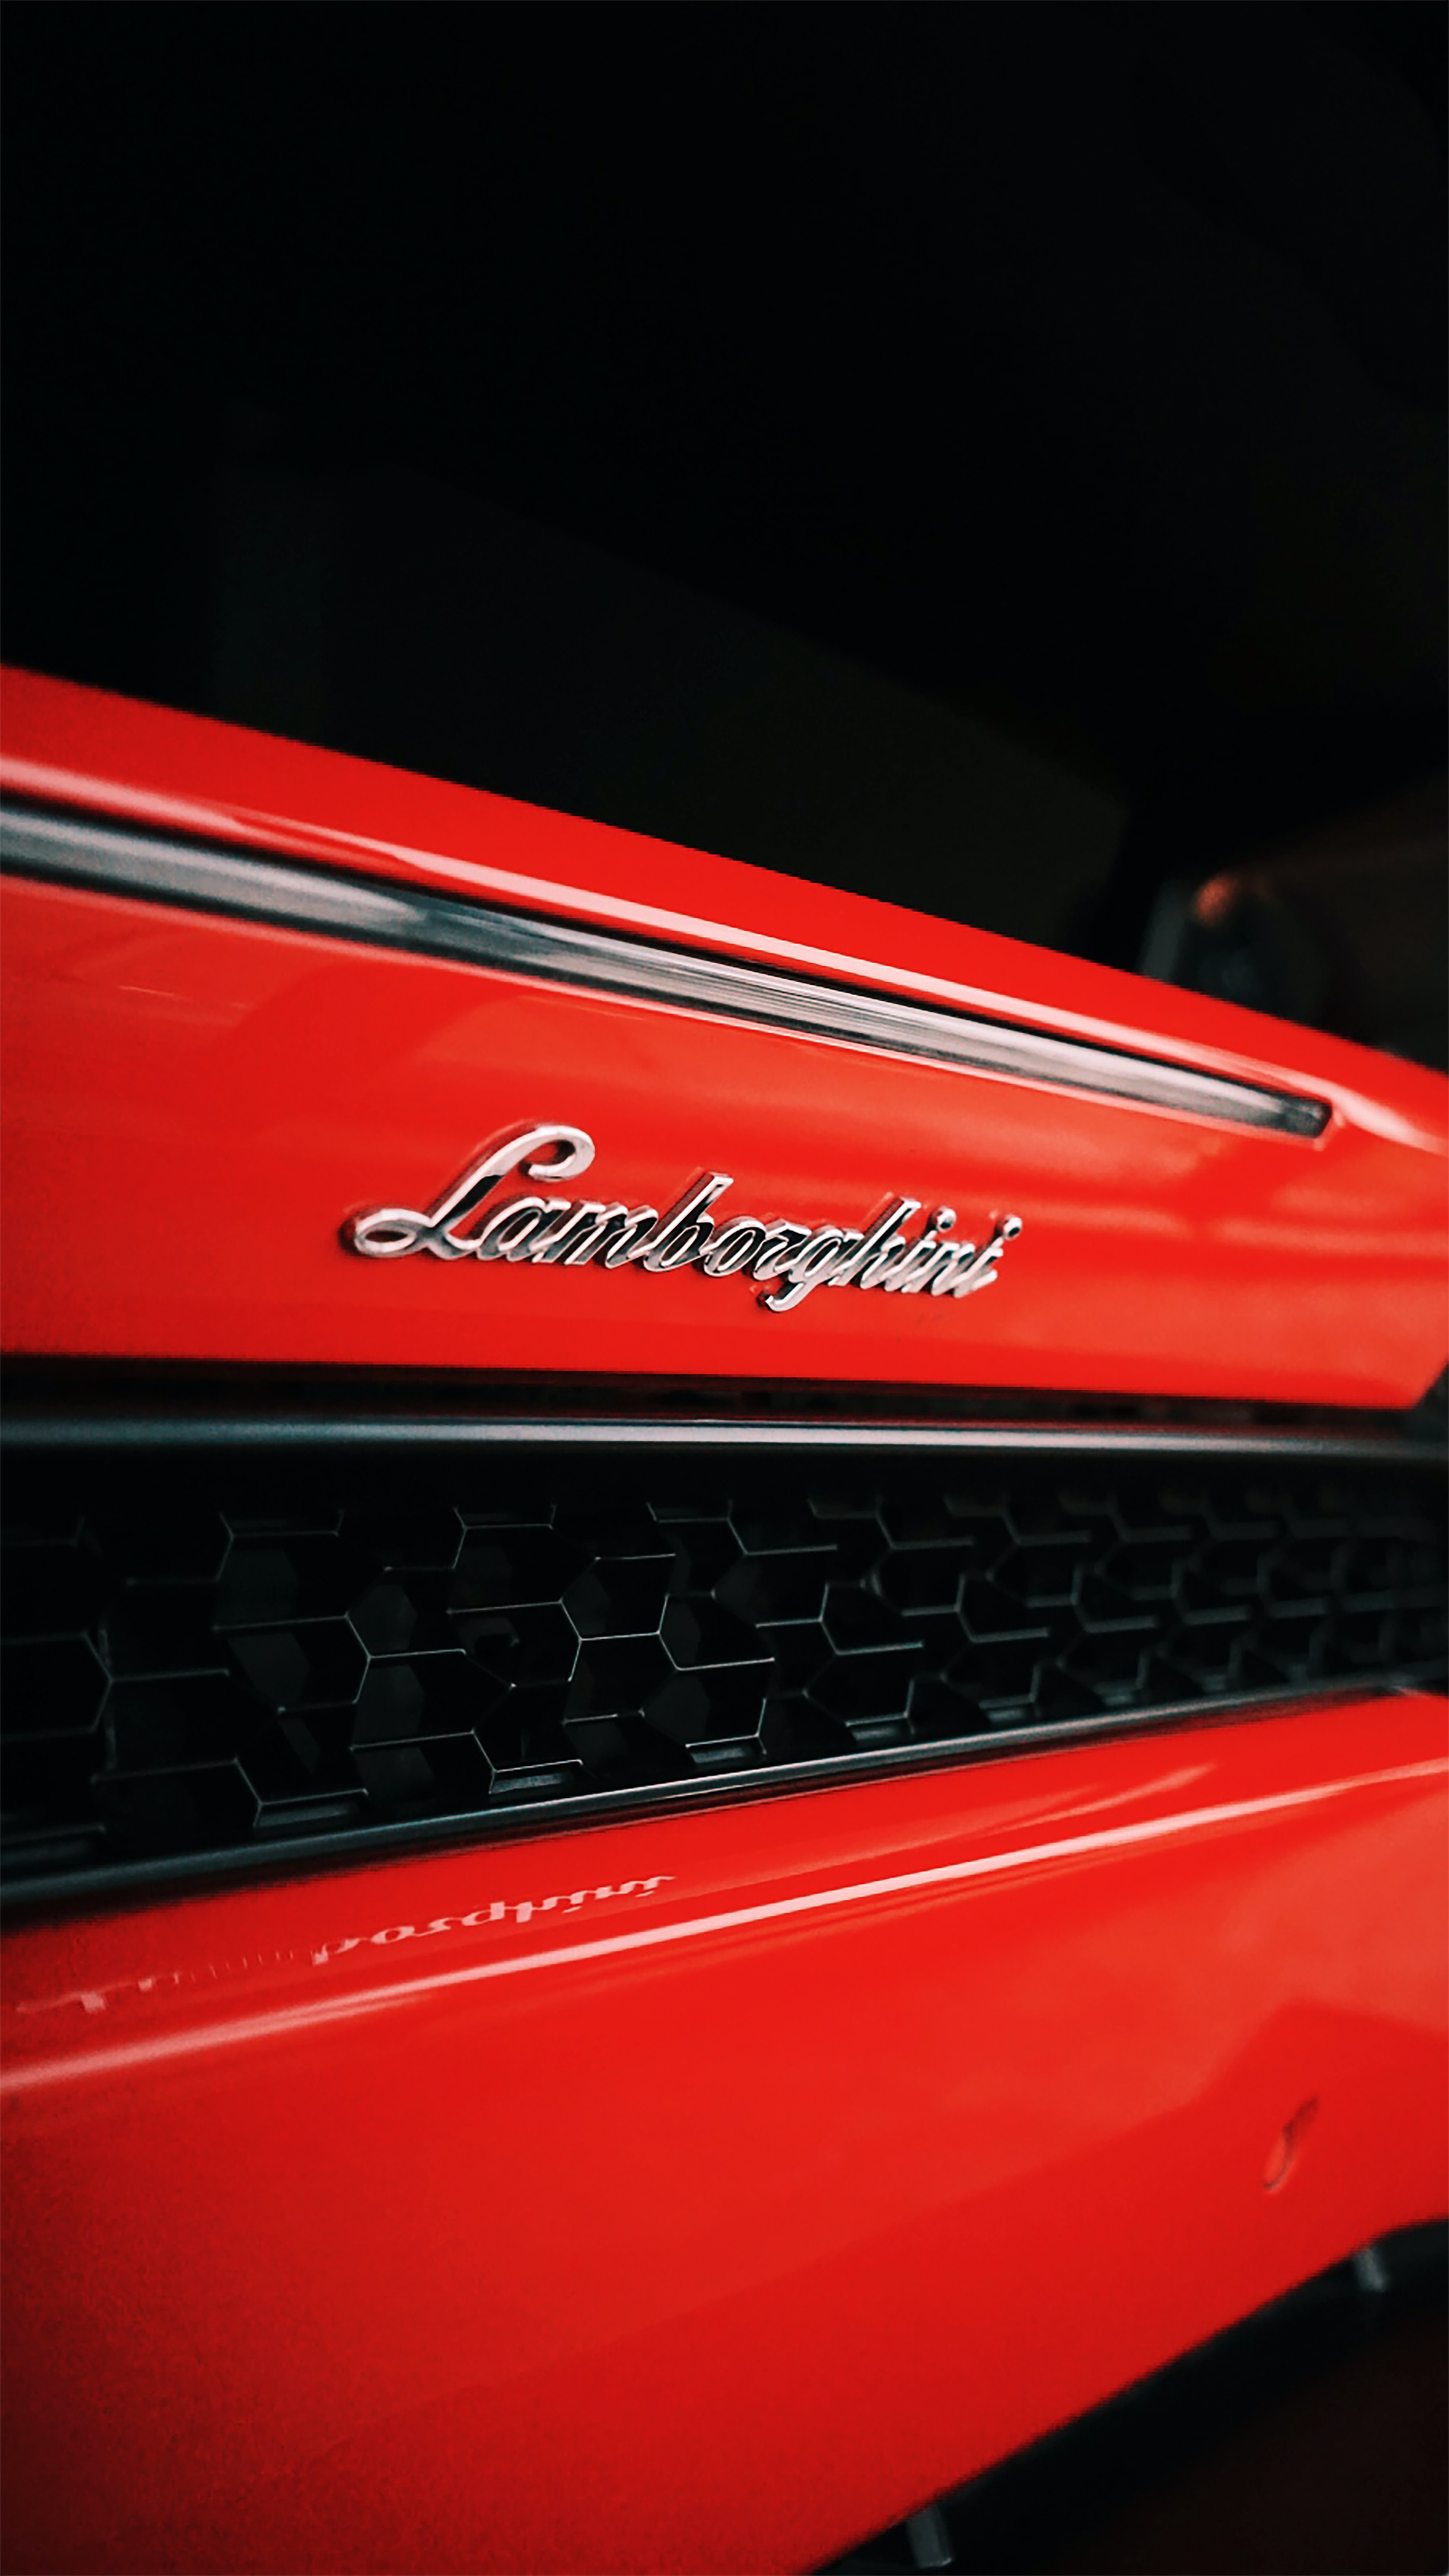 Скачать картинку Тачки (Cars), Красный, Автомобиль, Ламборджини (Lamborghini) в телефон бесплатно.